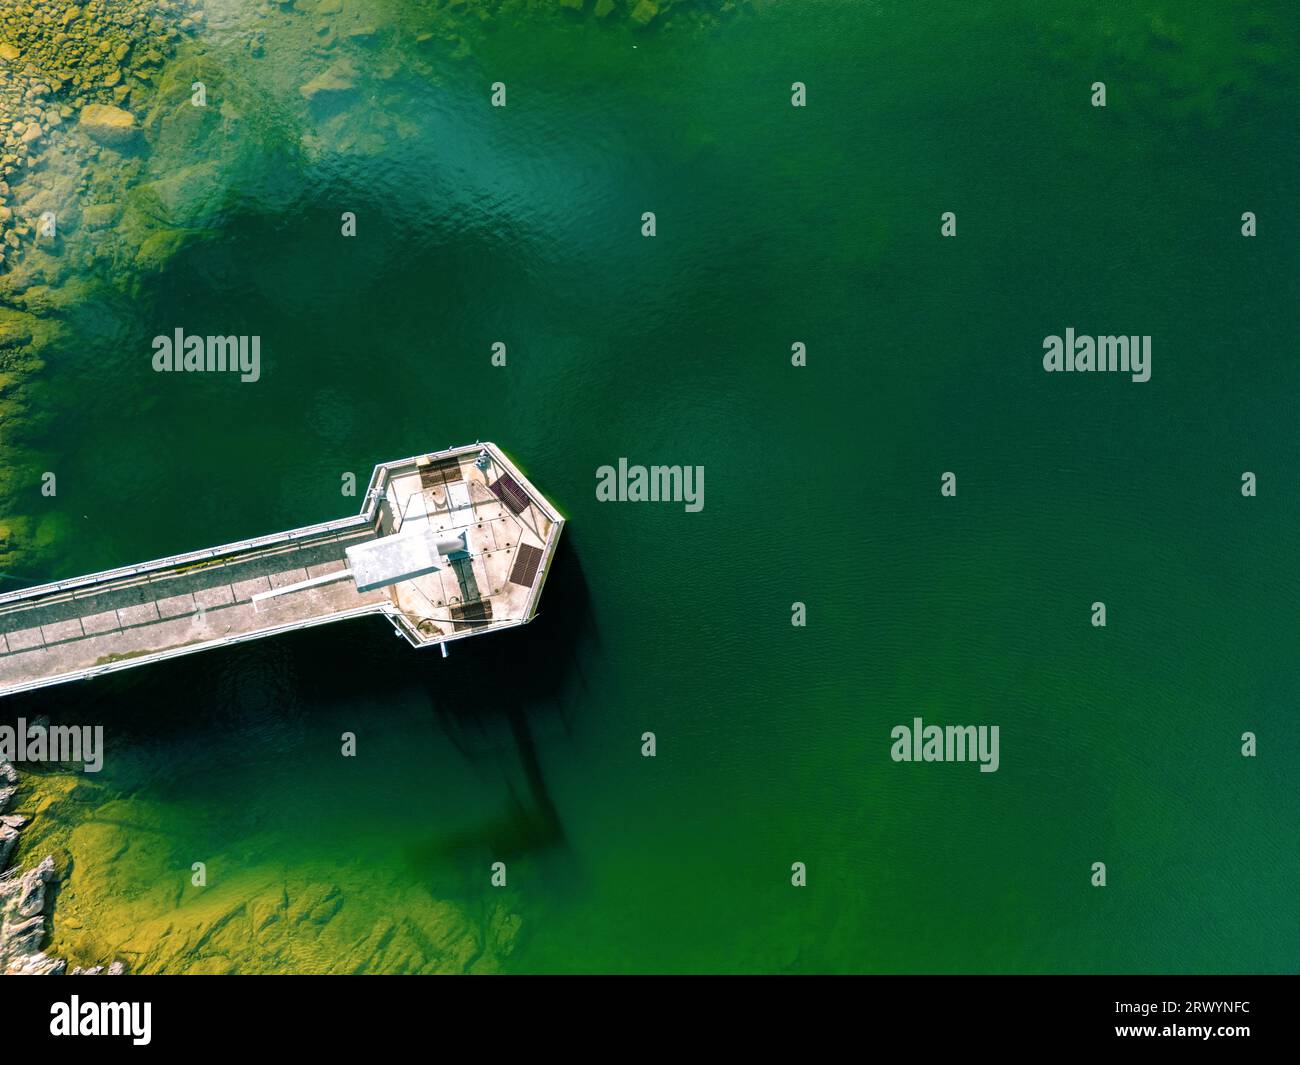 Une vue aérienne d'une station de traitement de l'eau entourée acheter de l'eau verte profonde et des roches recouvertes de mousse jaune / or dans le réservoir Yan Yean à Melbourne, A. Banque D'Images